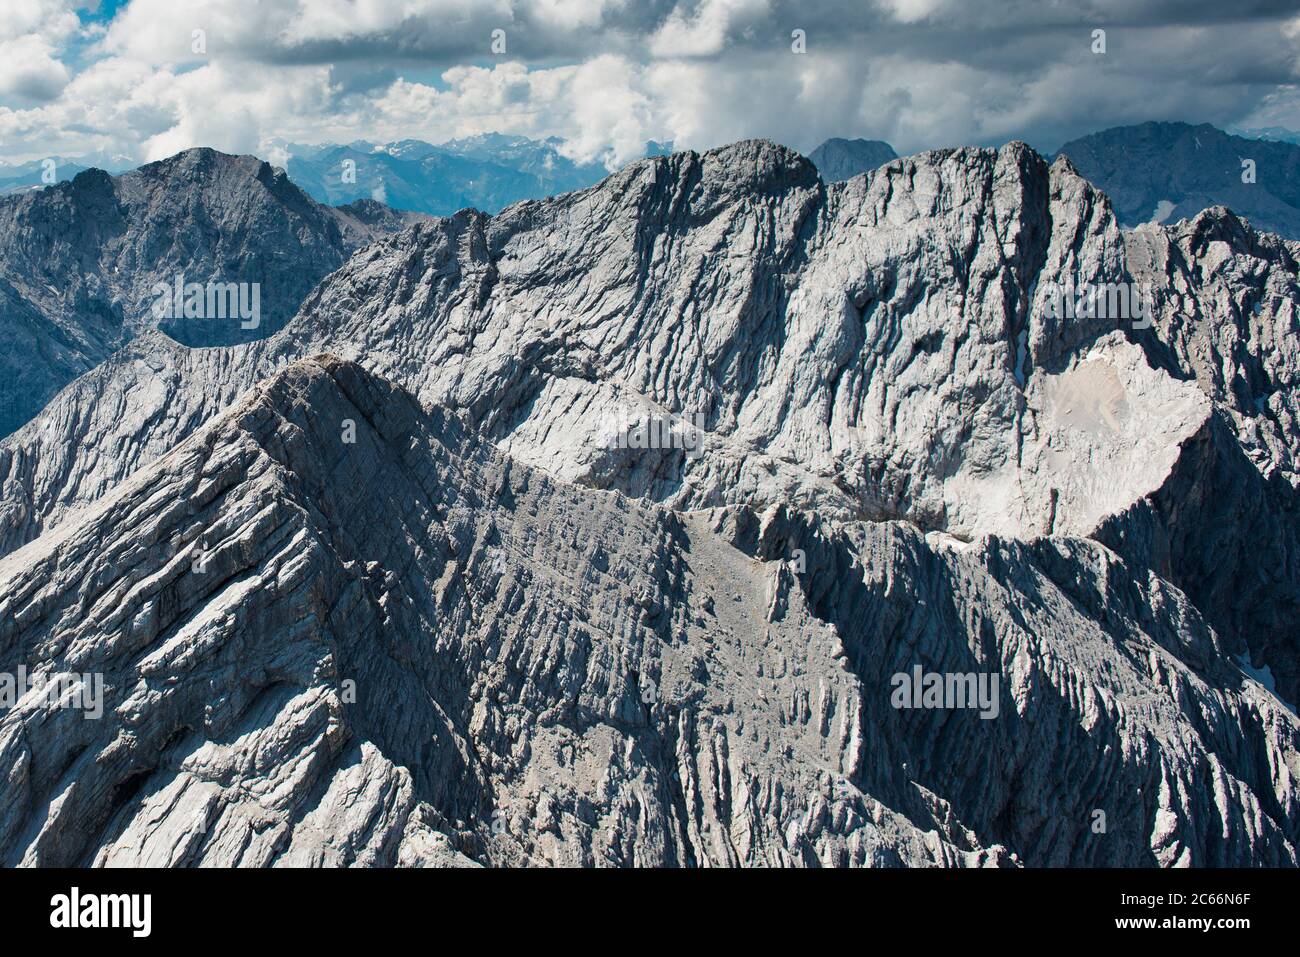 Pic Alpspitze avec Hochblassen Peak et Jubiläumssgrat Araque, alpinistes, photographie aérienne, Garmisch-Partenkirchen, Bavière, Allemagne Banque D'Images